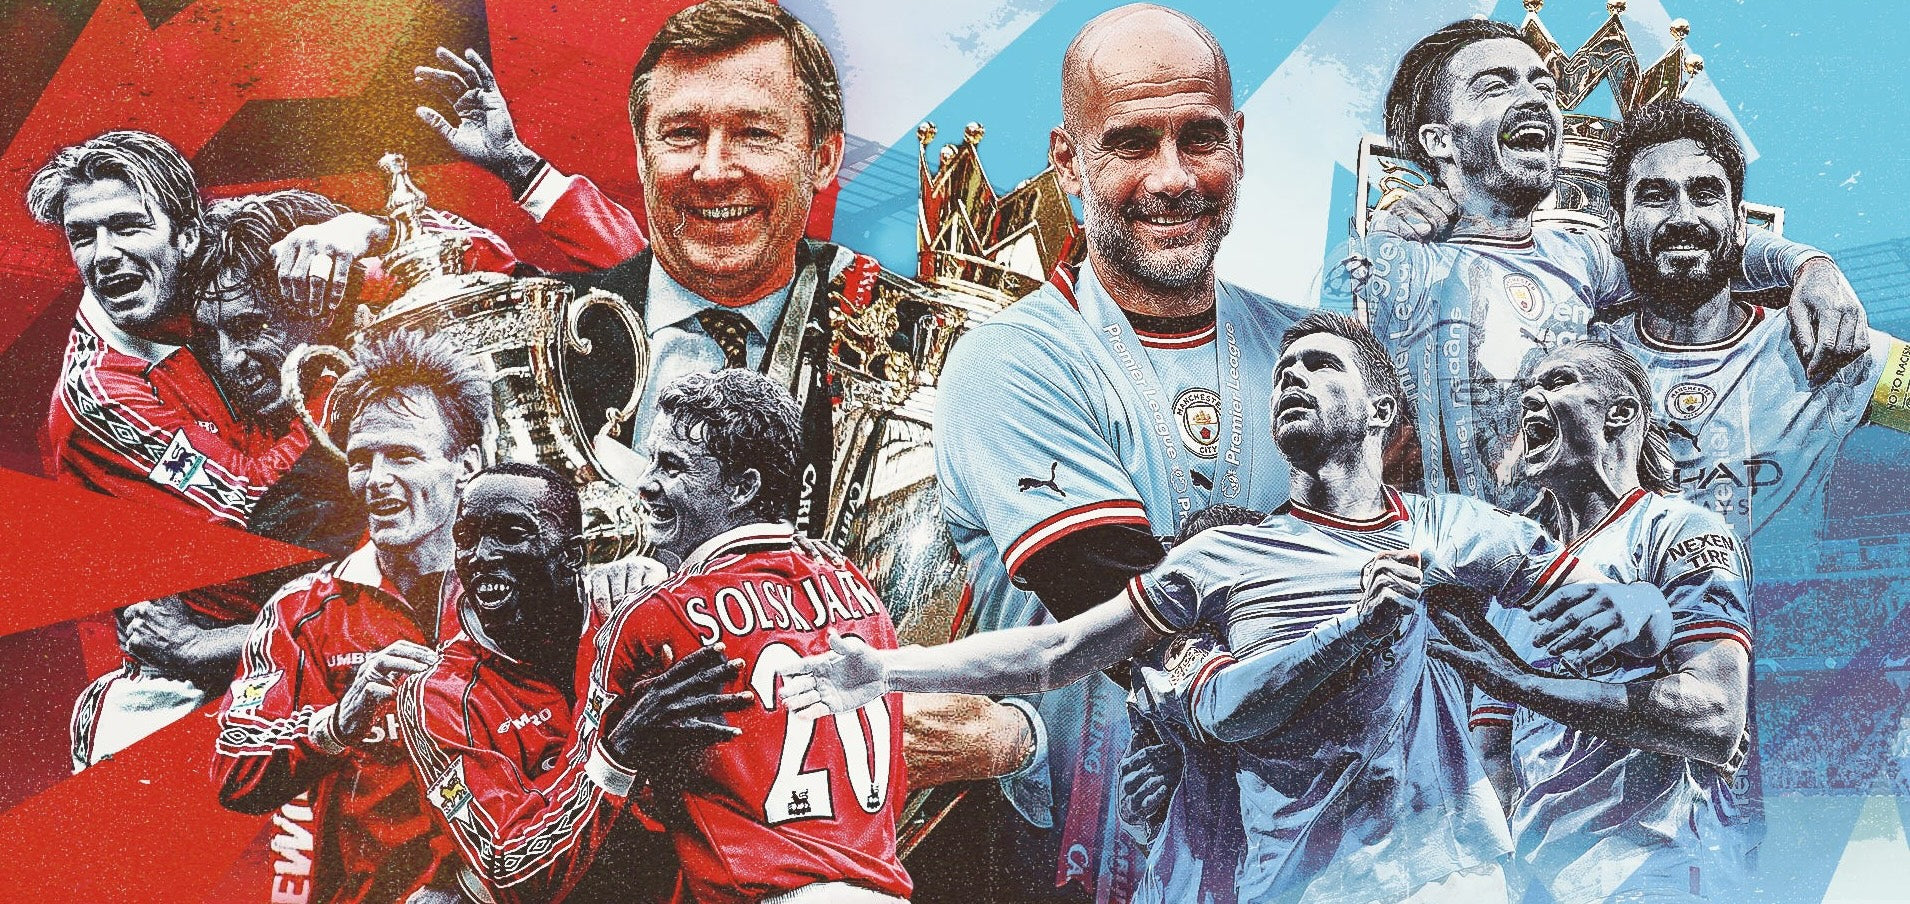 El pulso de la pasión: La rivalidad del Manchester en el fútbol